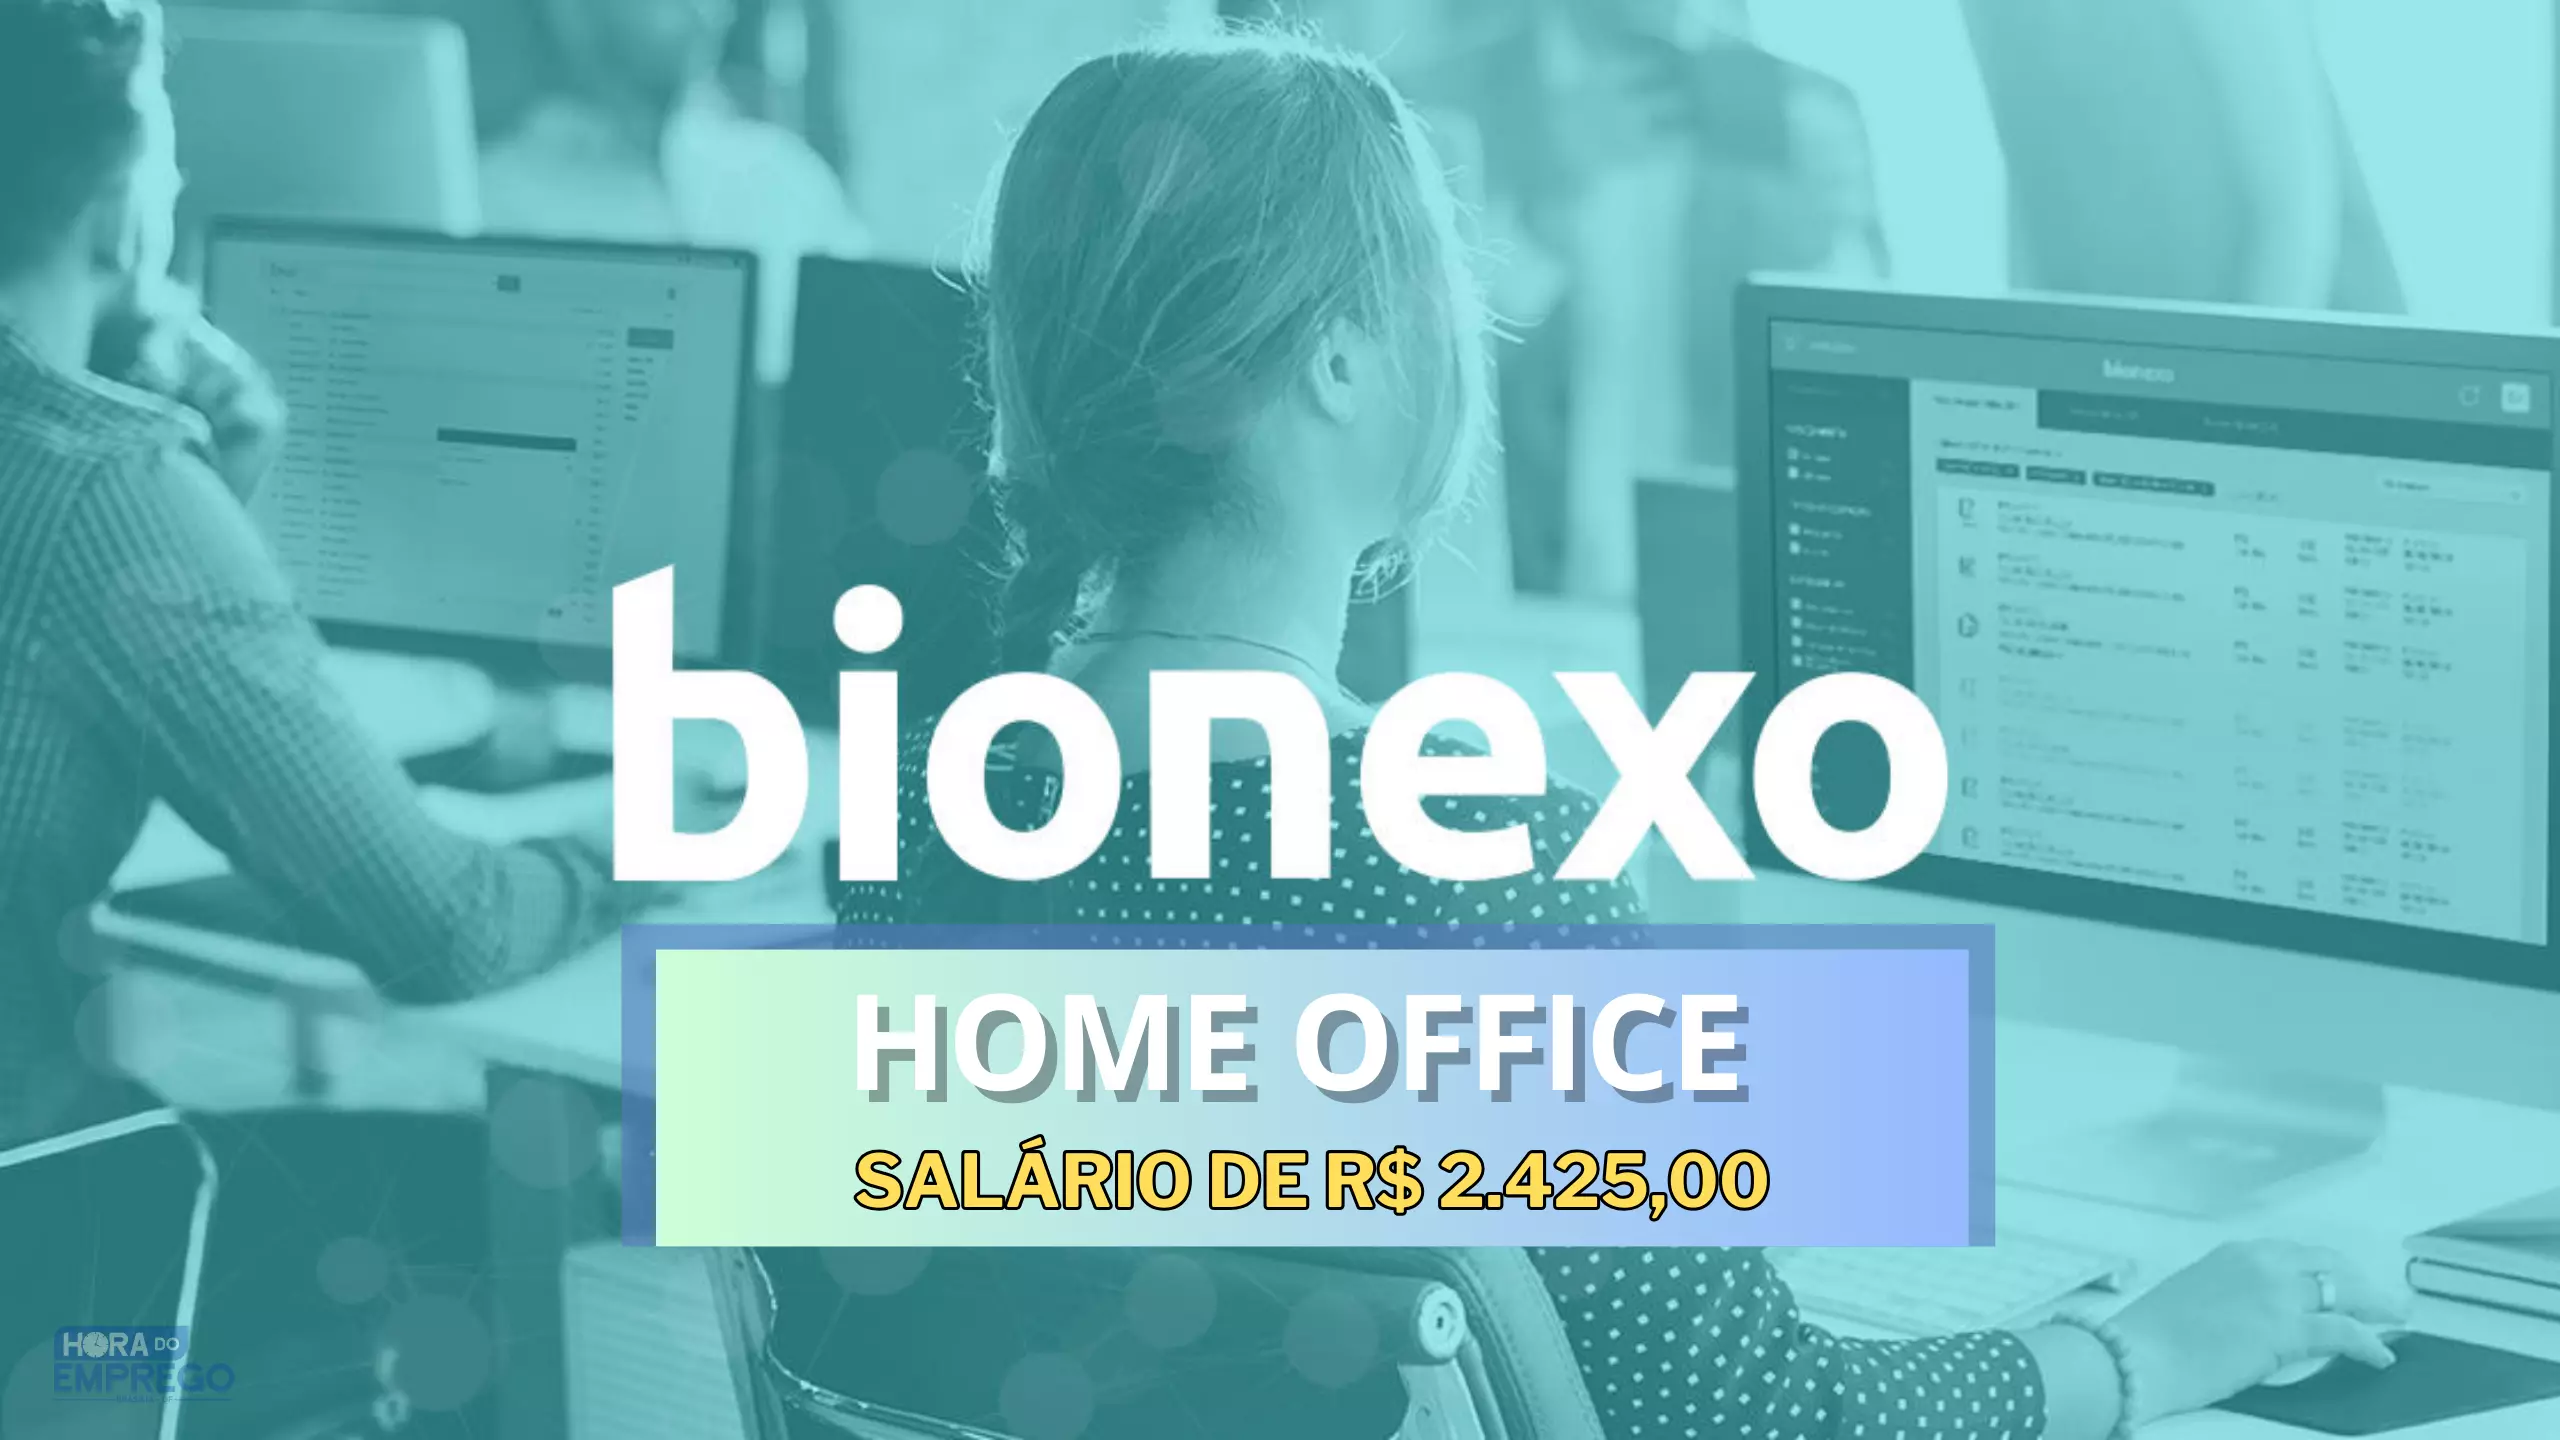 Bionexo abre vaga HOME OFFICE para Atendimento ao Cliente com salário de 2.425,00 e regime CLT